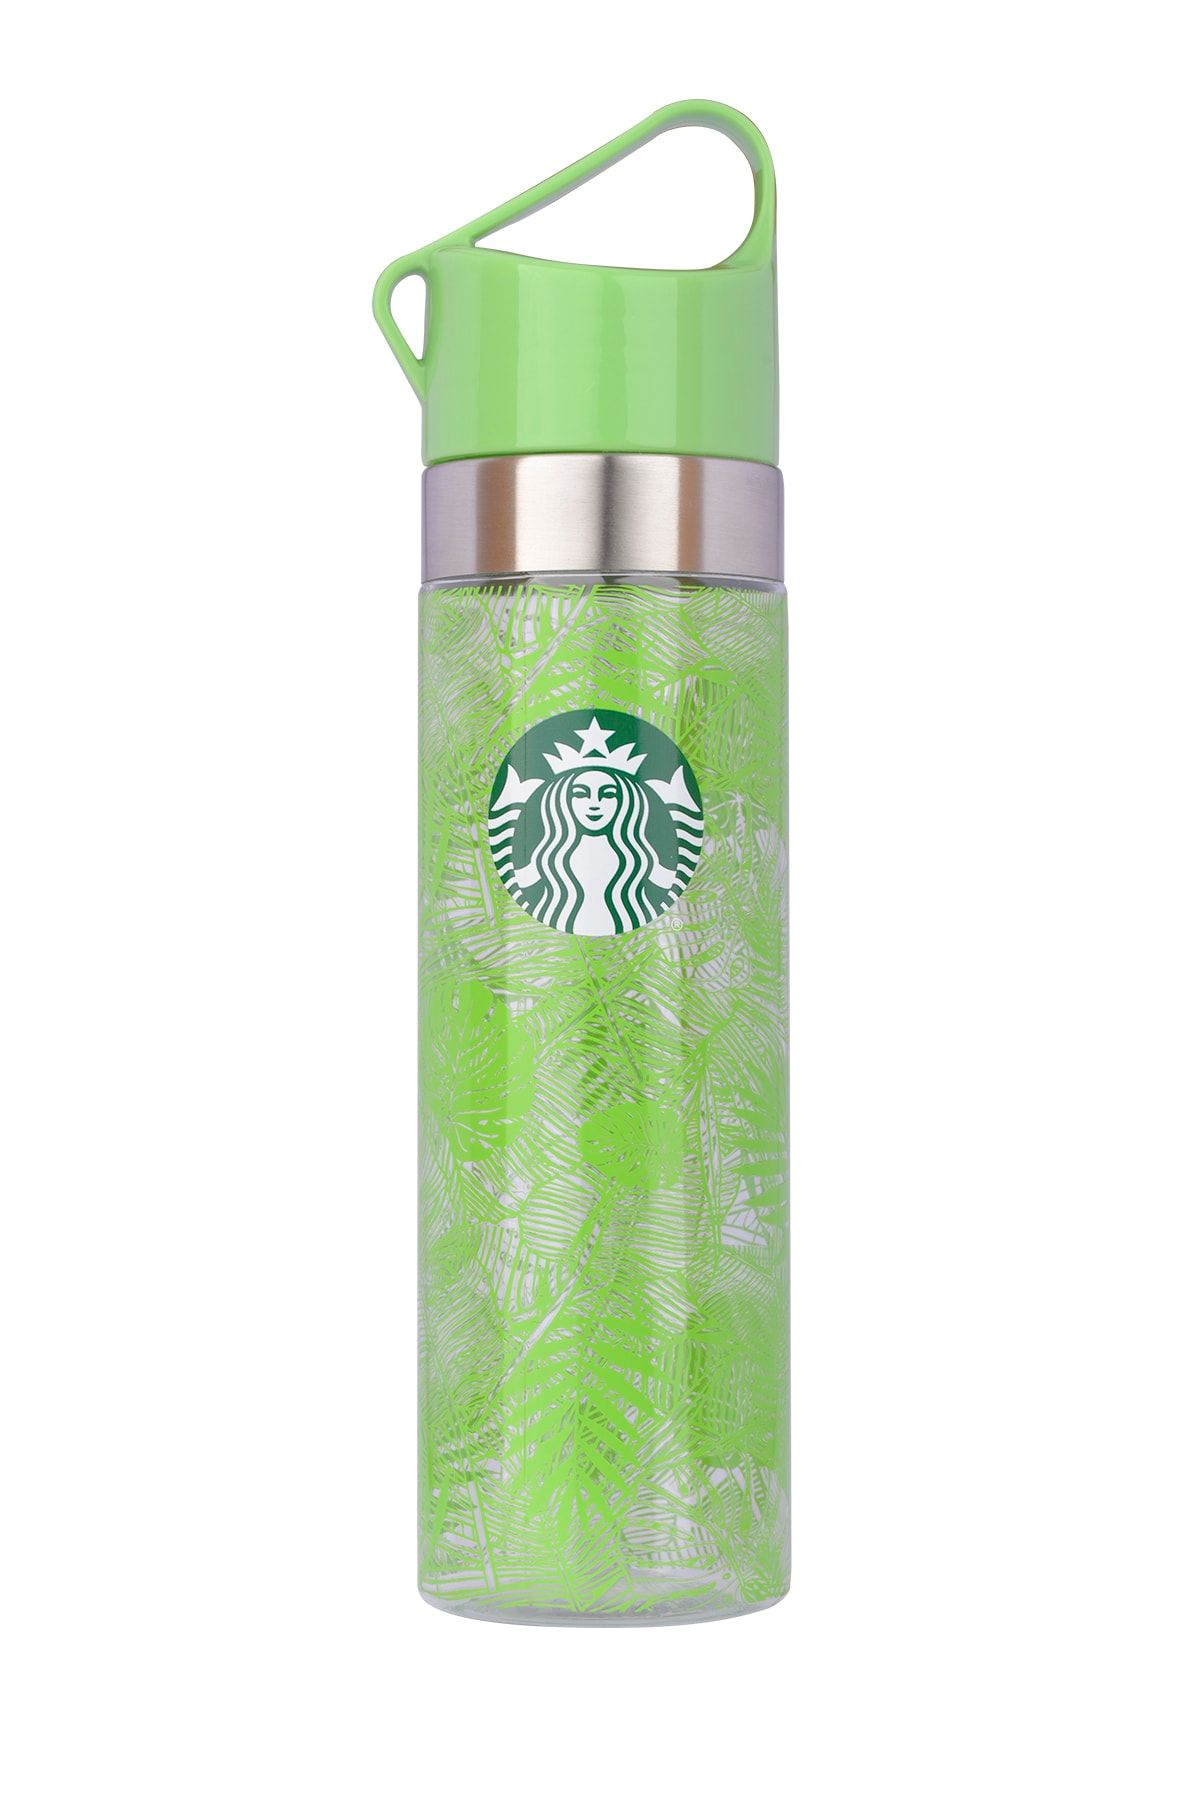 Starbucks ® Yeşil Yaprak Desenli Su Şişesi - 680 Ml 23 Oz Greenbox0052